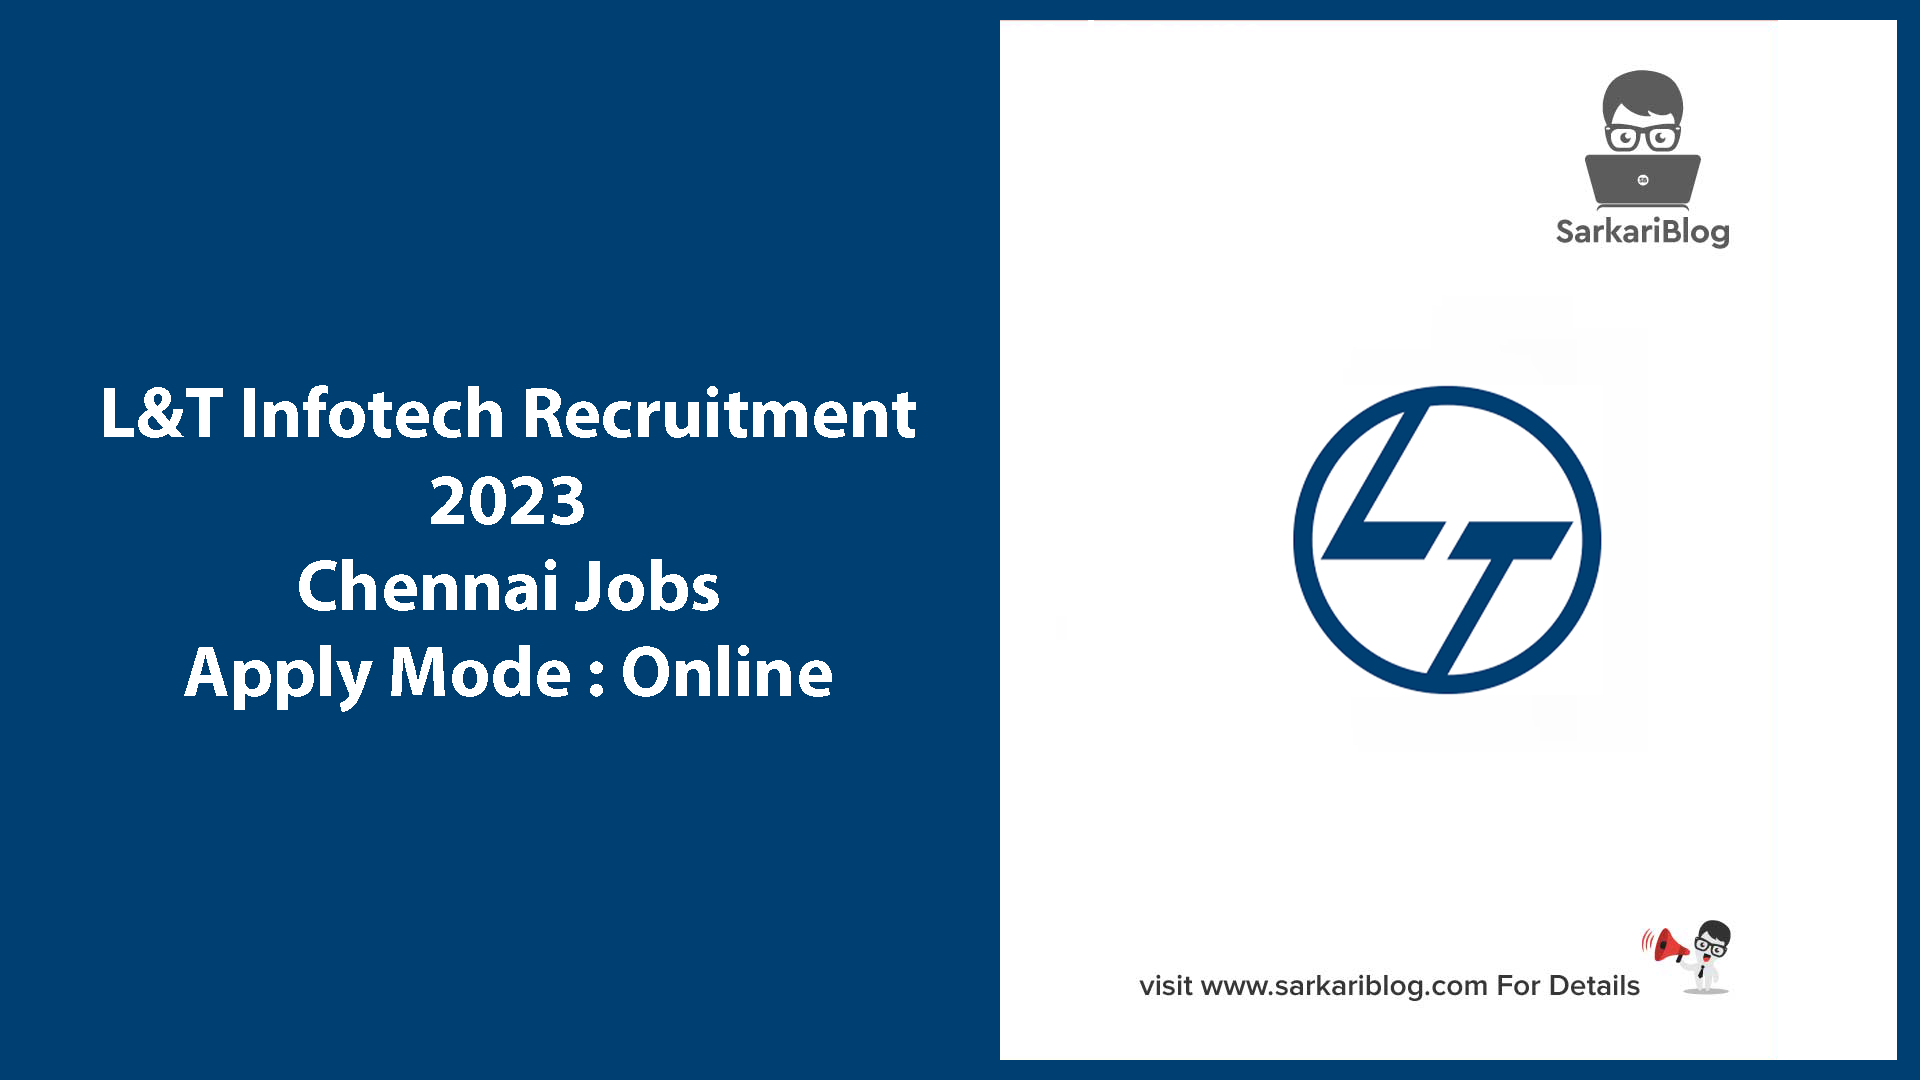 L&T Infotech Recruitment 2023